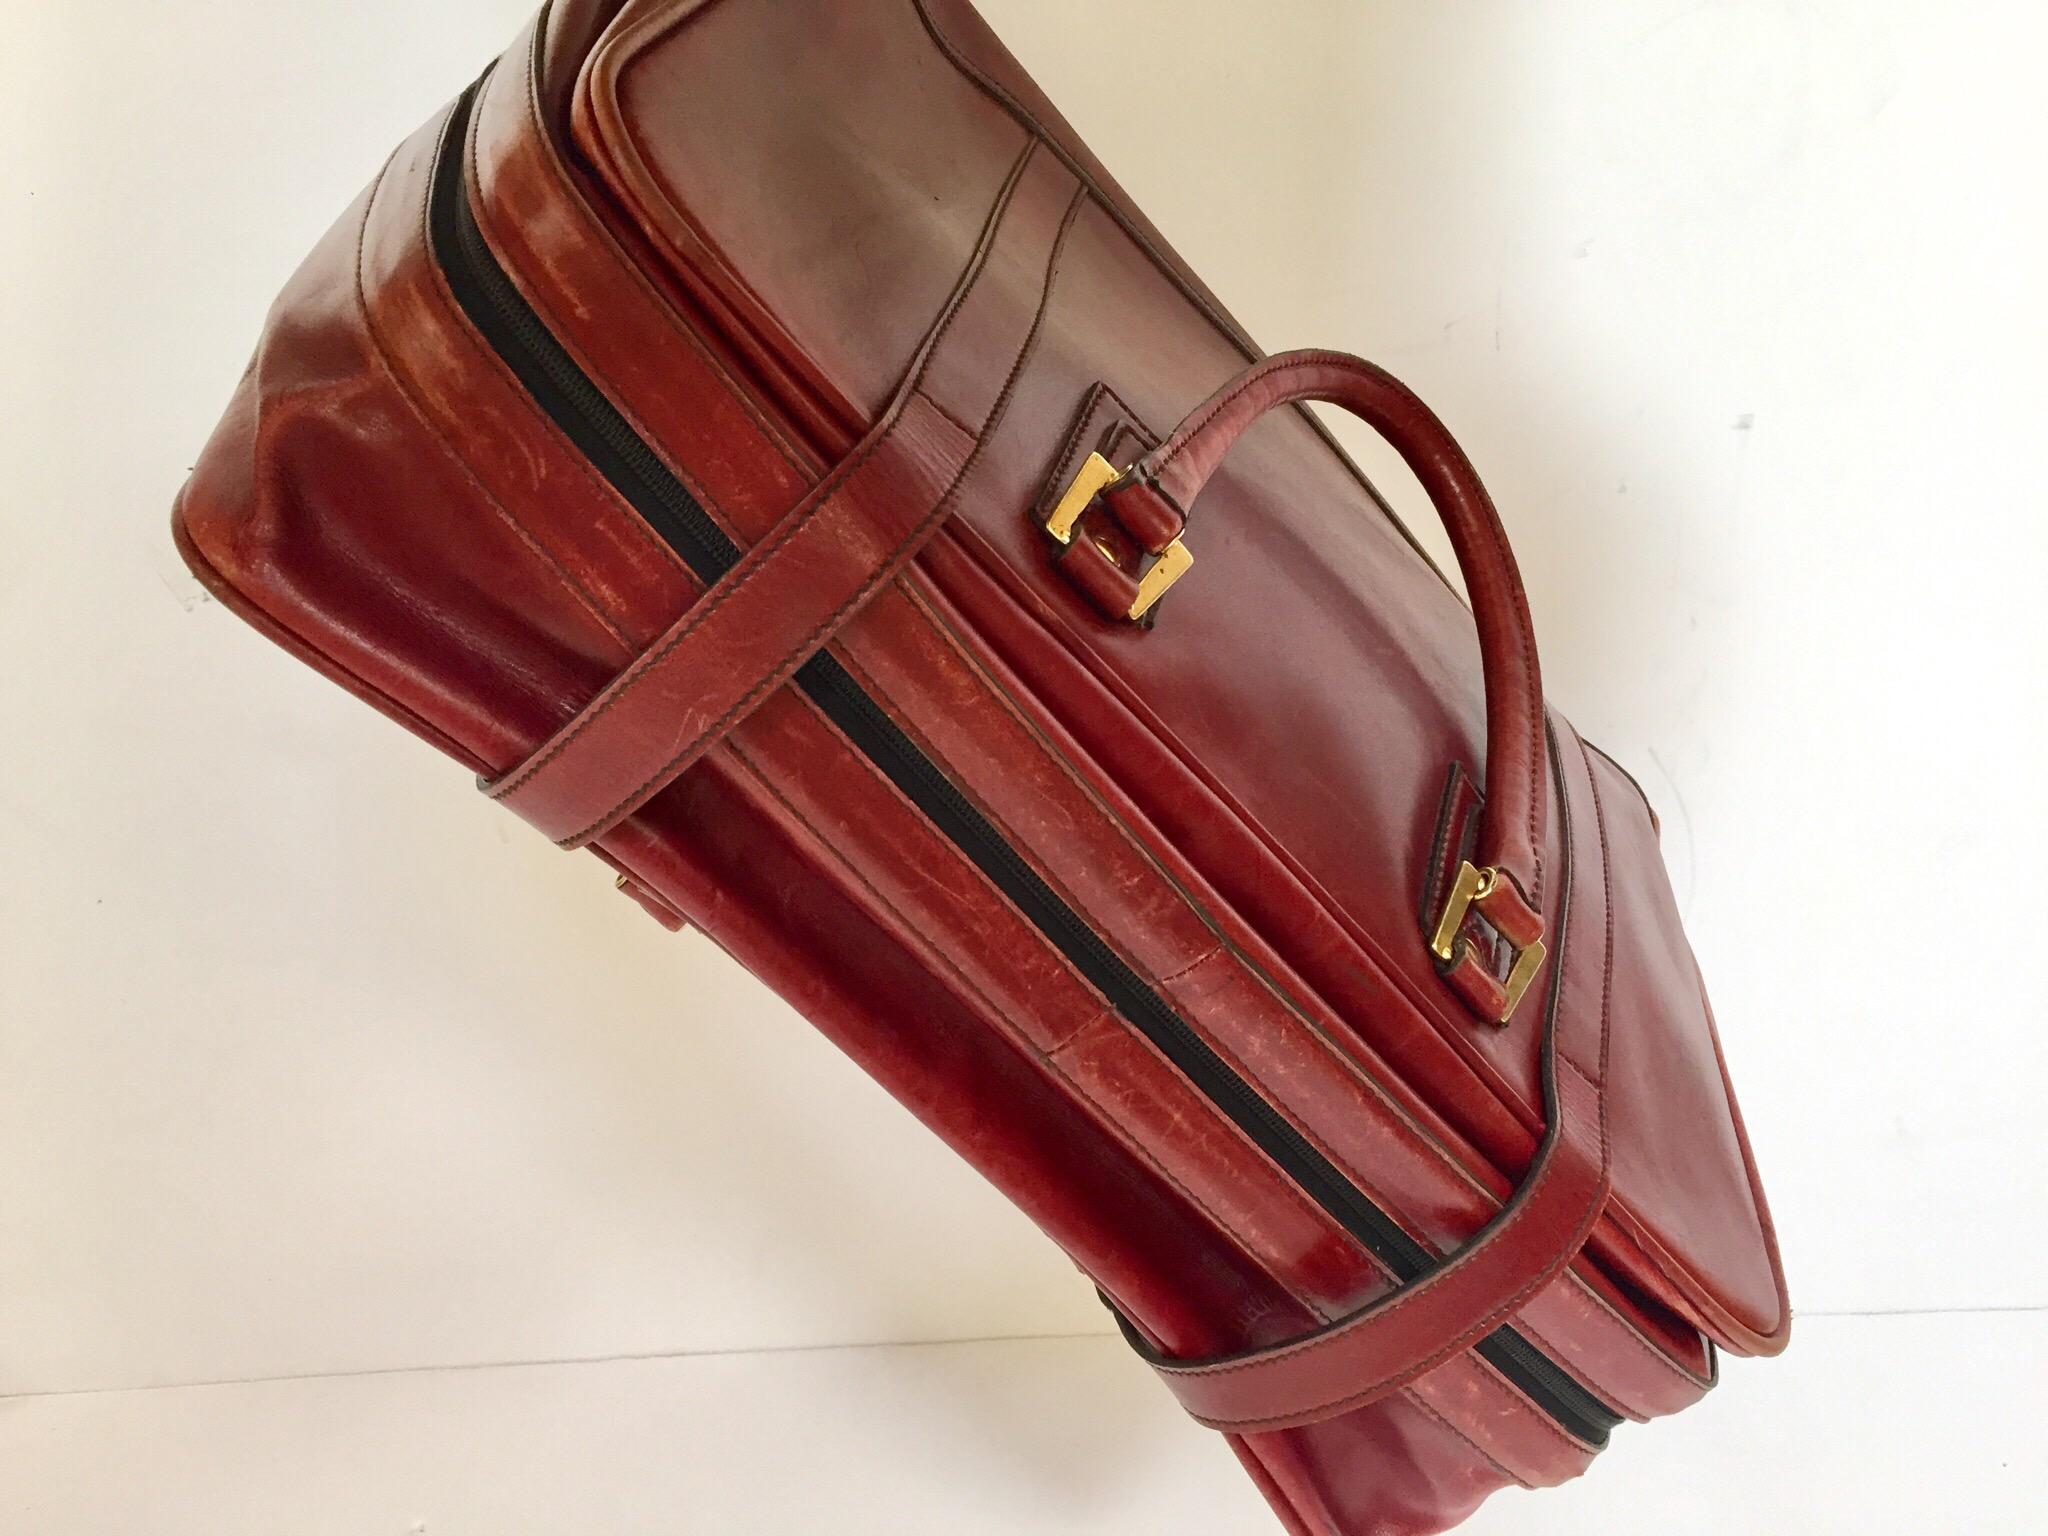 Vintage Leather Travel Bag 